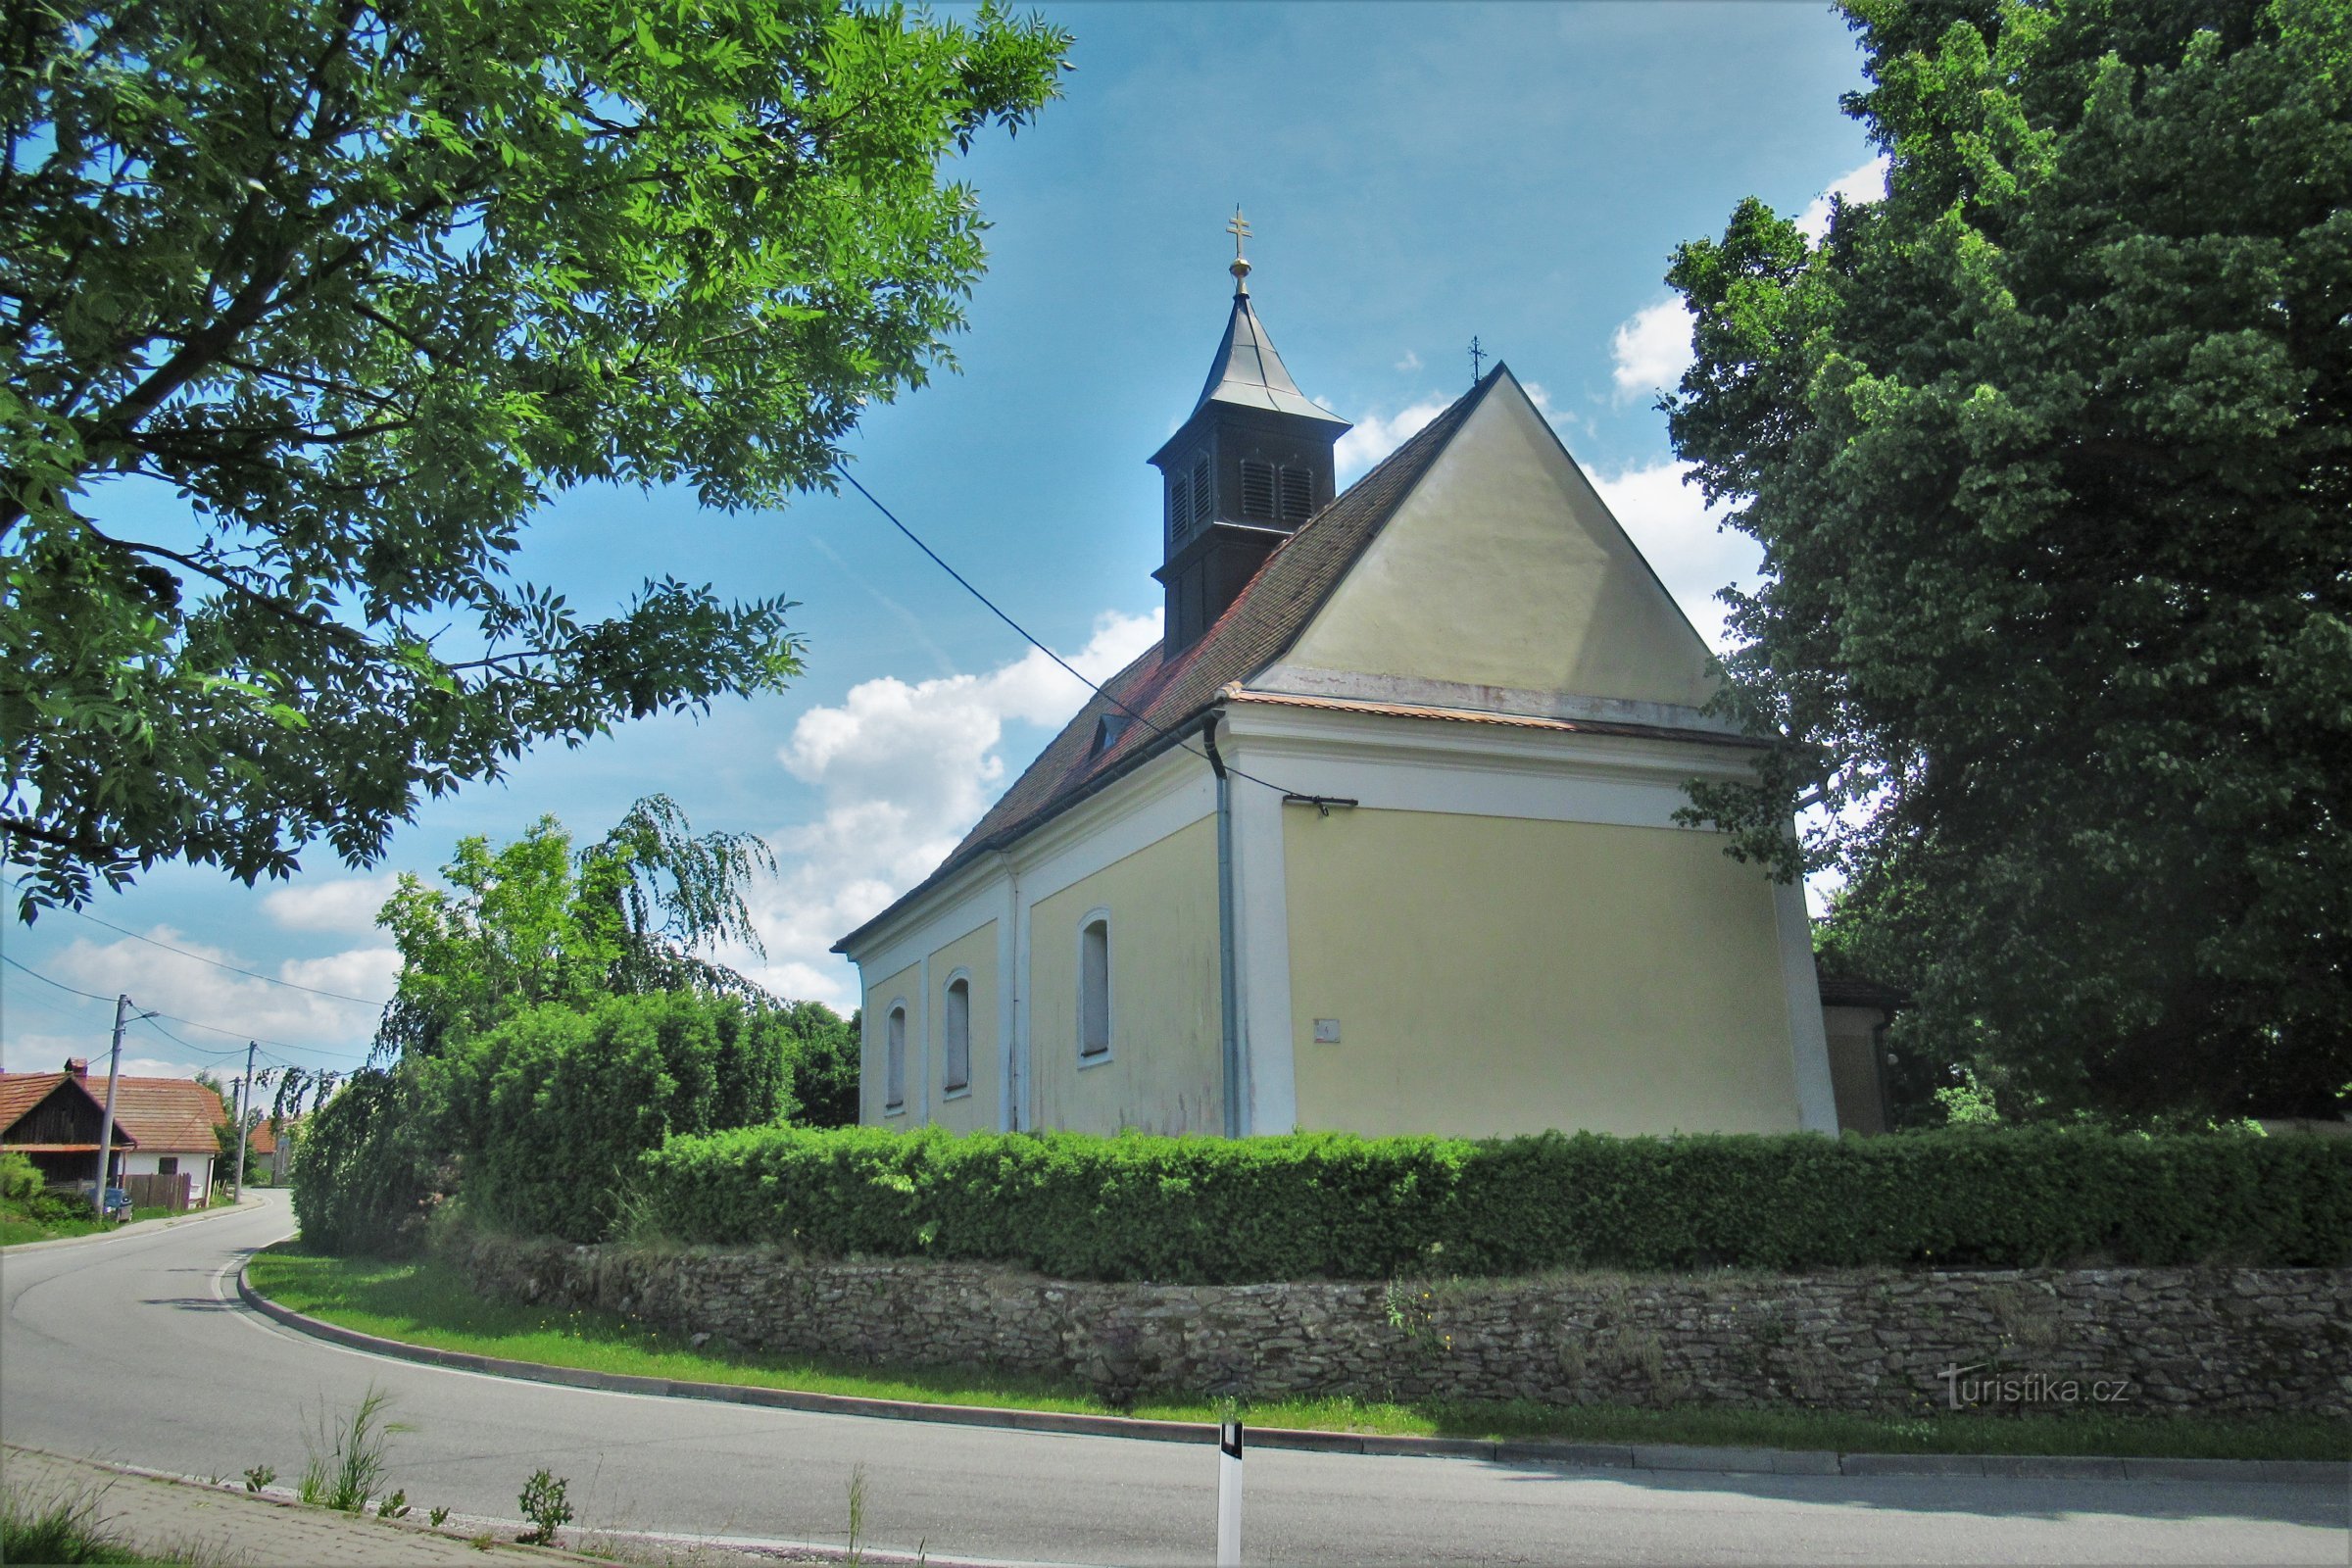 Nemčice - Pyhän Nikolauksen kirkko Nicholas